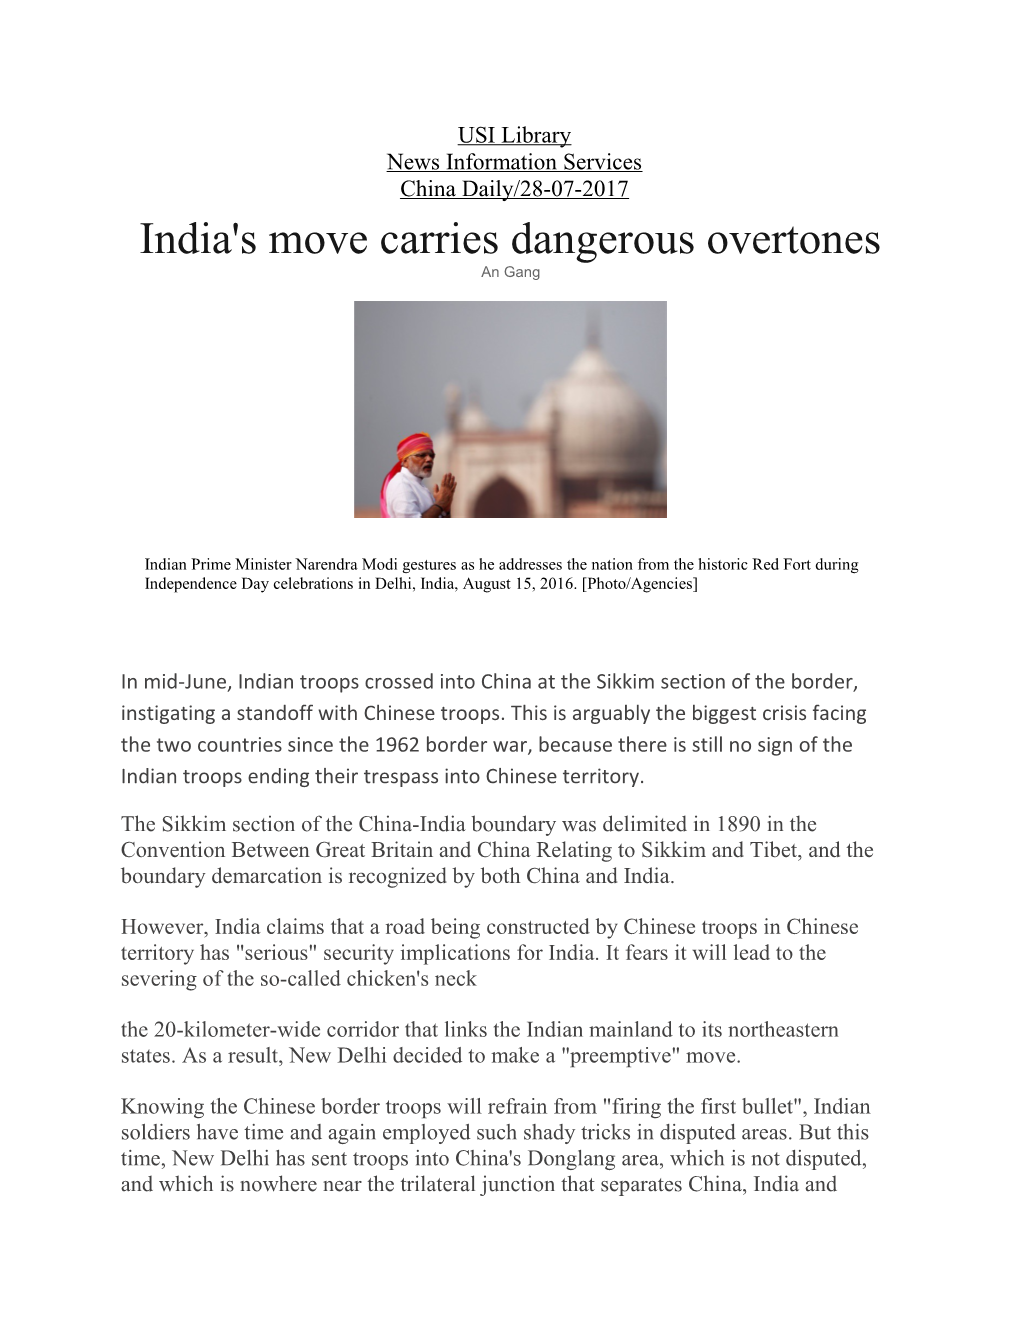 India's Move Carries Dangerous Overtones